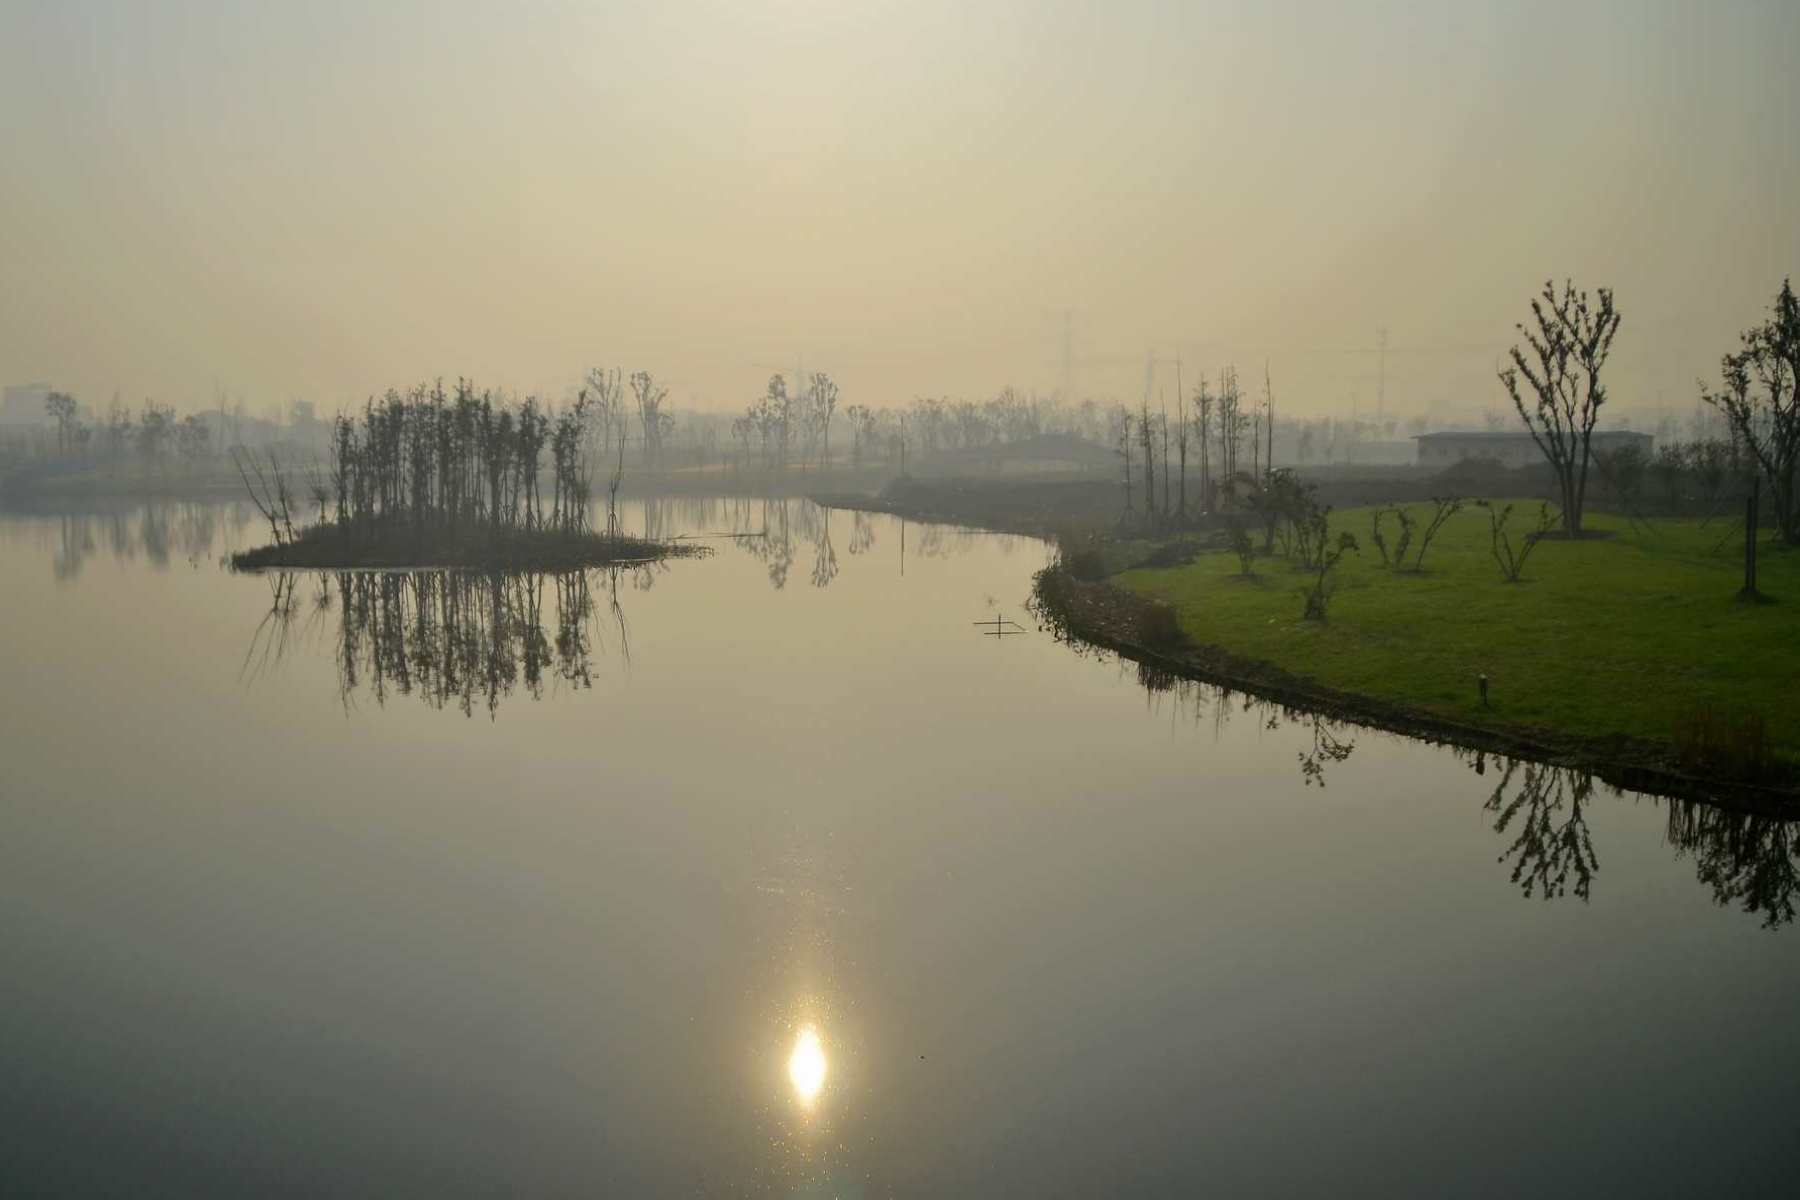 无锡九里河湿地公园侧光拍摄 - 尼康 D3100 样张 - PConline数码相机样张库